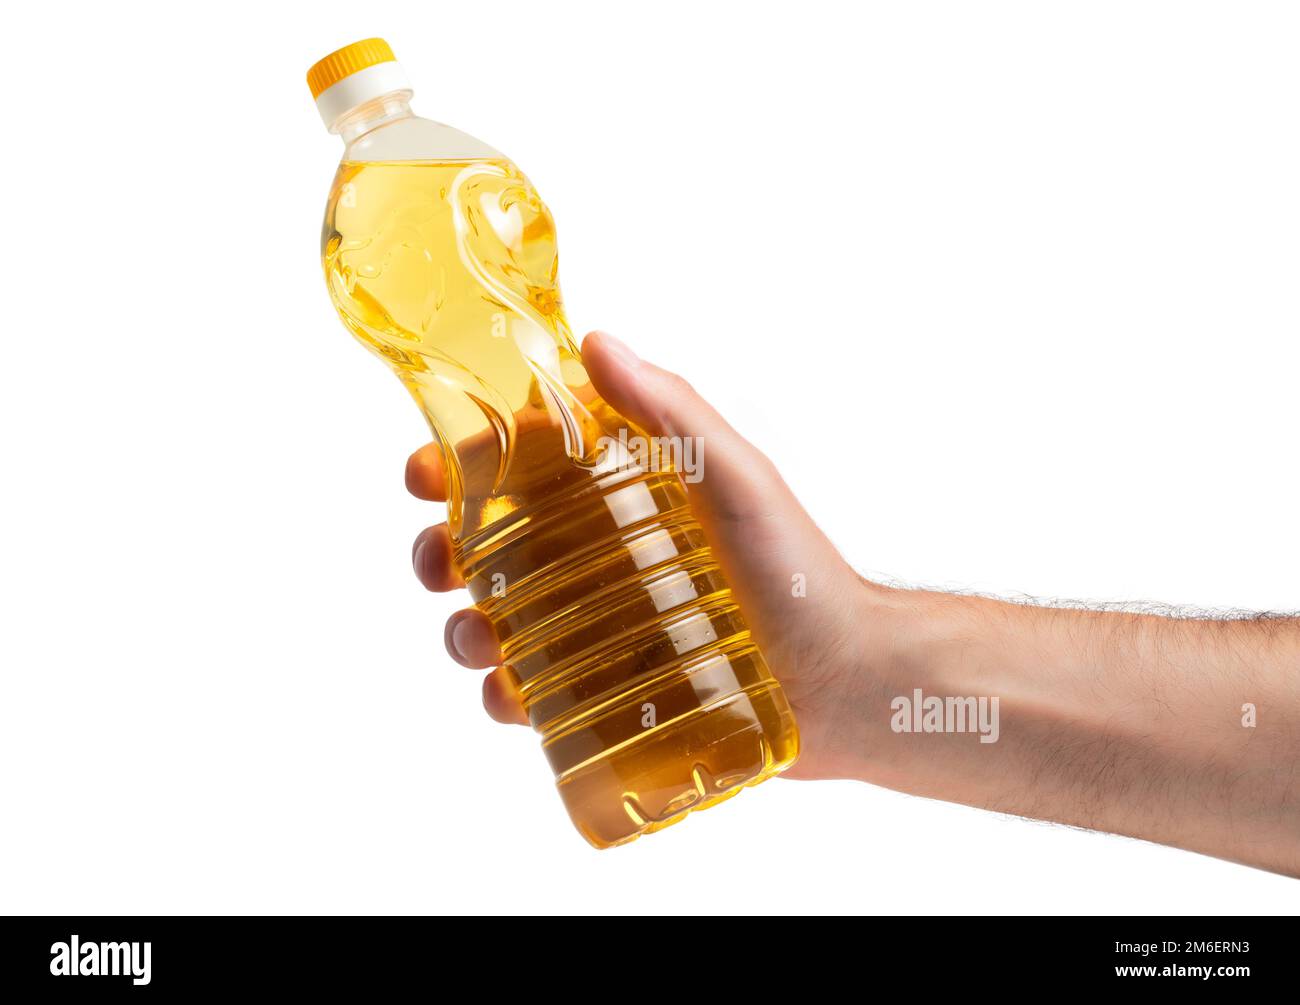 Eine Flasche goldenes Sonnenblumenöl in der Hand. Produkt auf einem weißen isolierten Hintergrund ohne Etikett. Sonnenblumenöl stammt aus den Samen der Sonnenblumen. Stockfoto